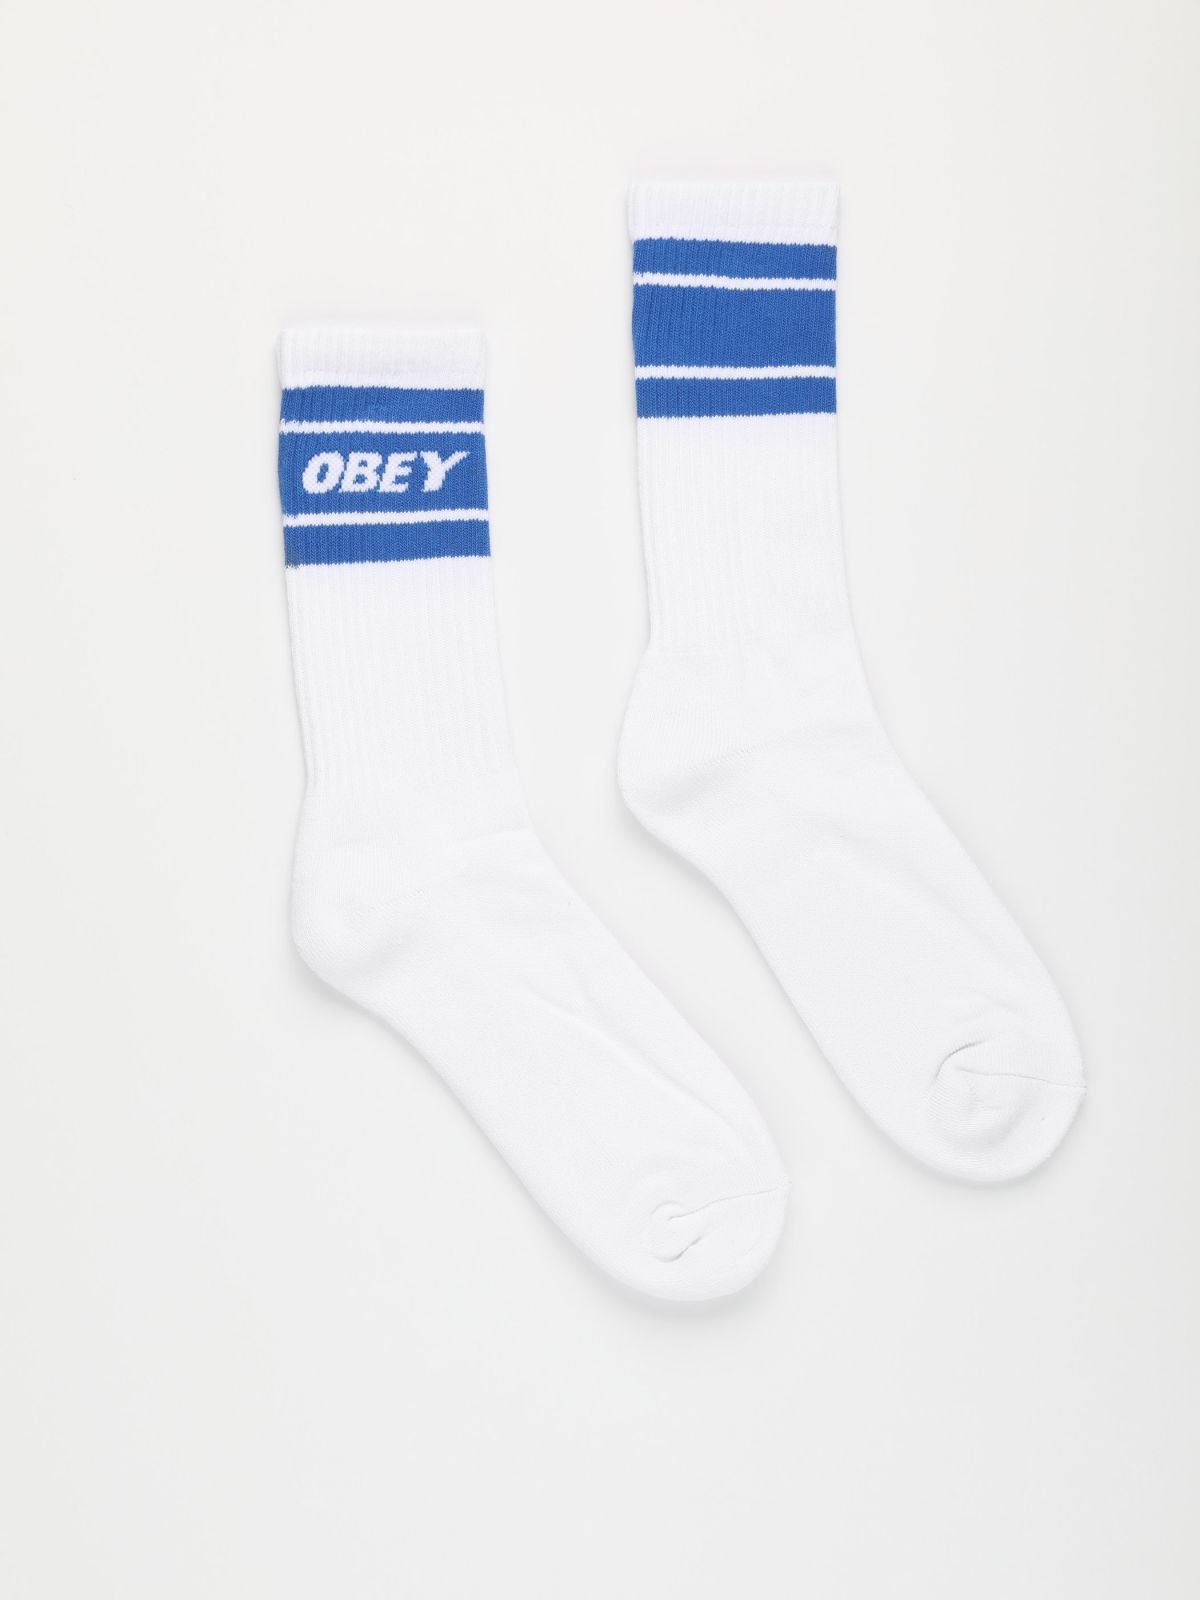  גרביים גבוהים עם לוגו / גברים של OBEY